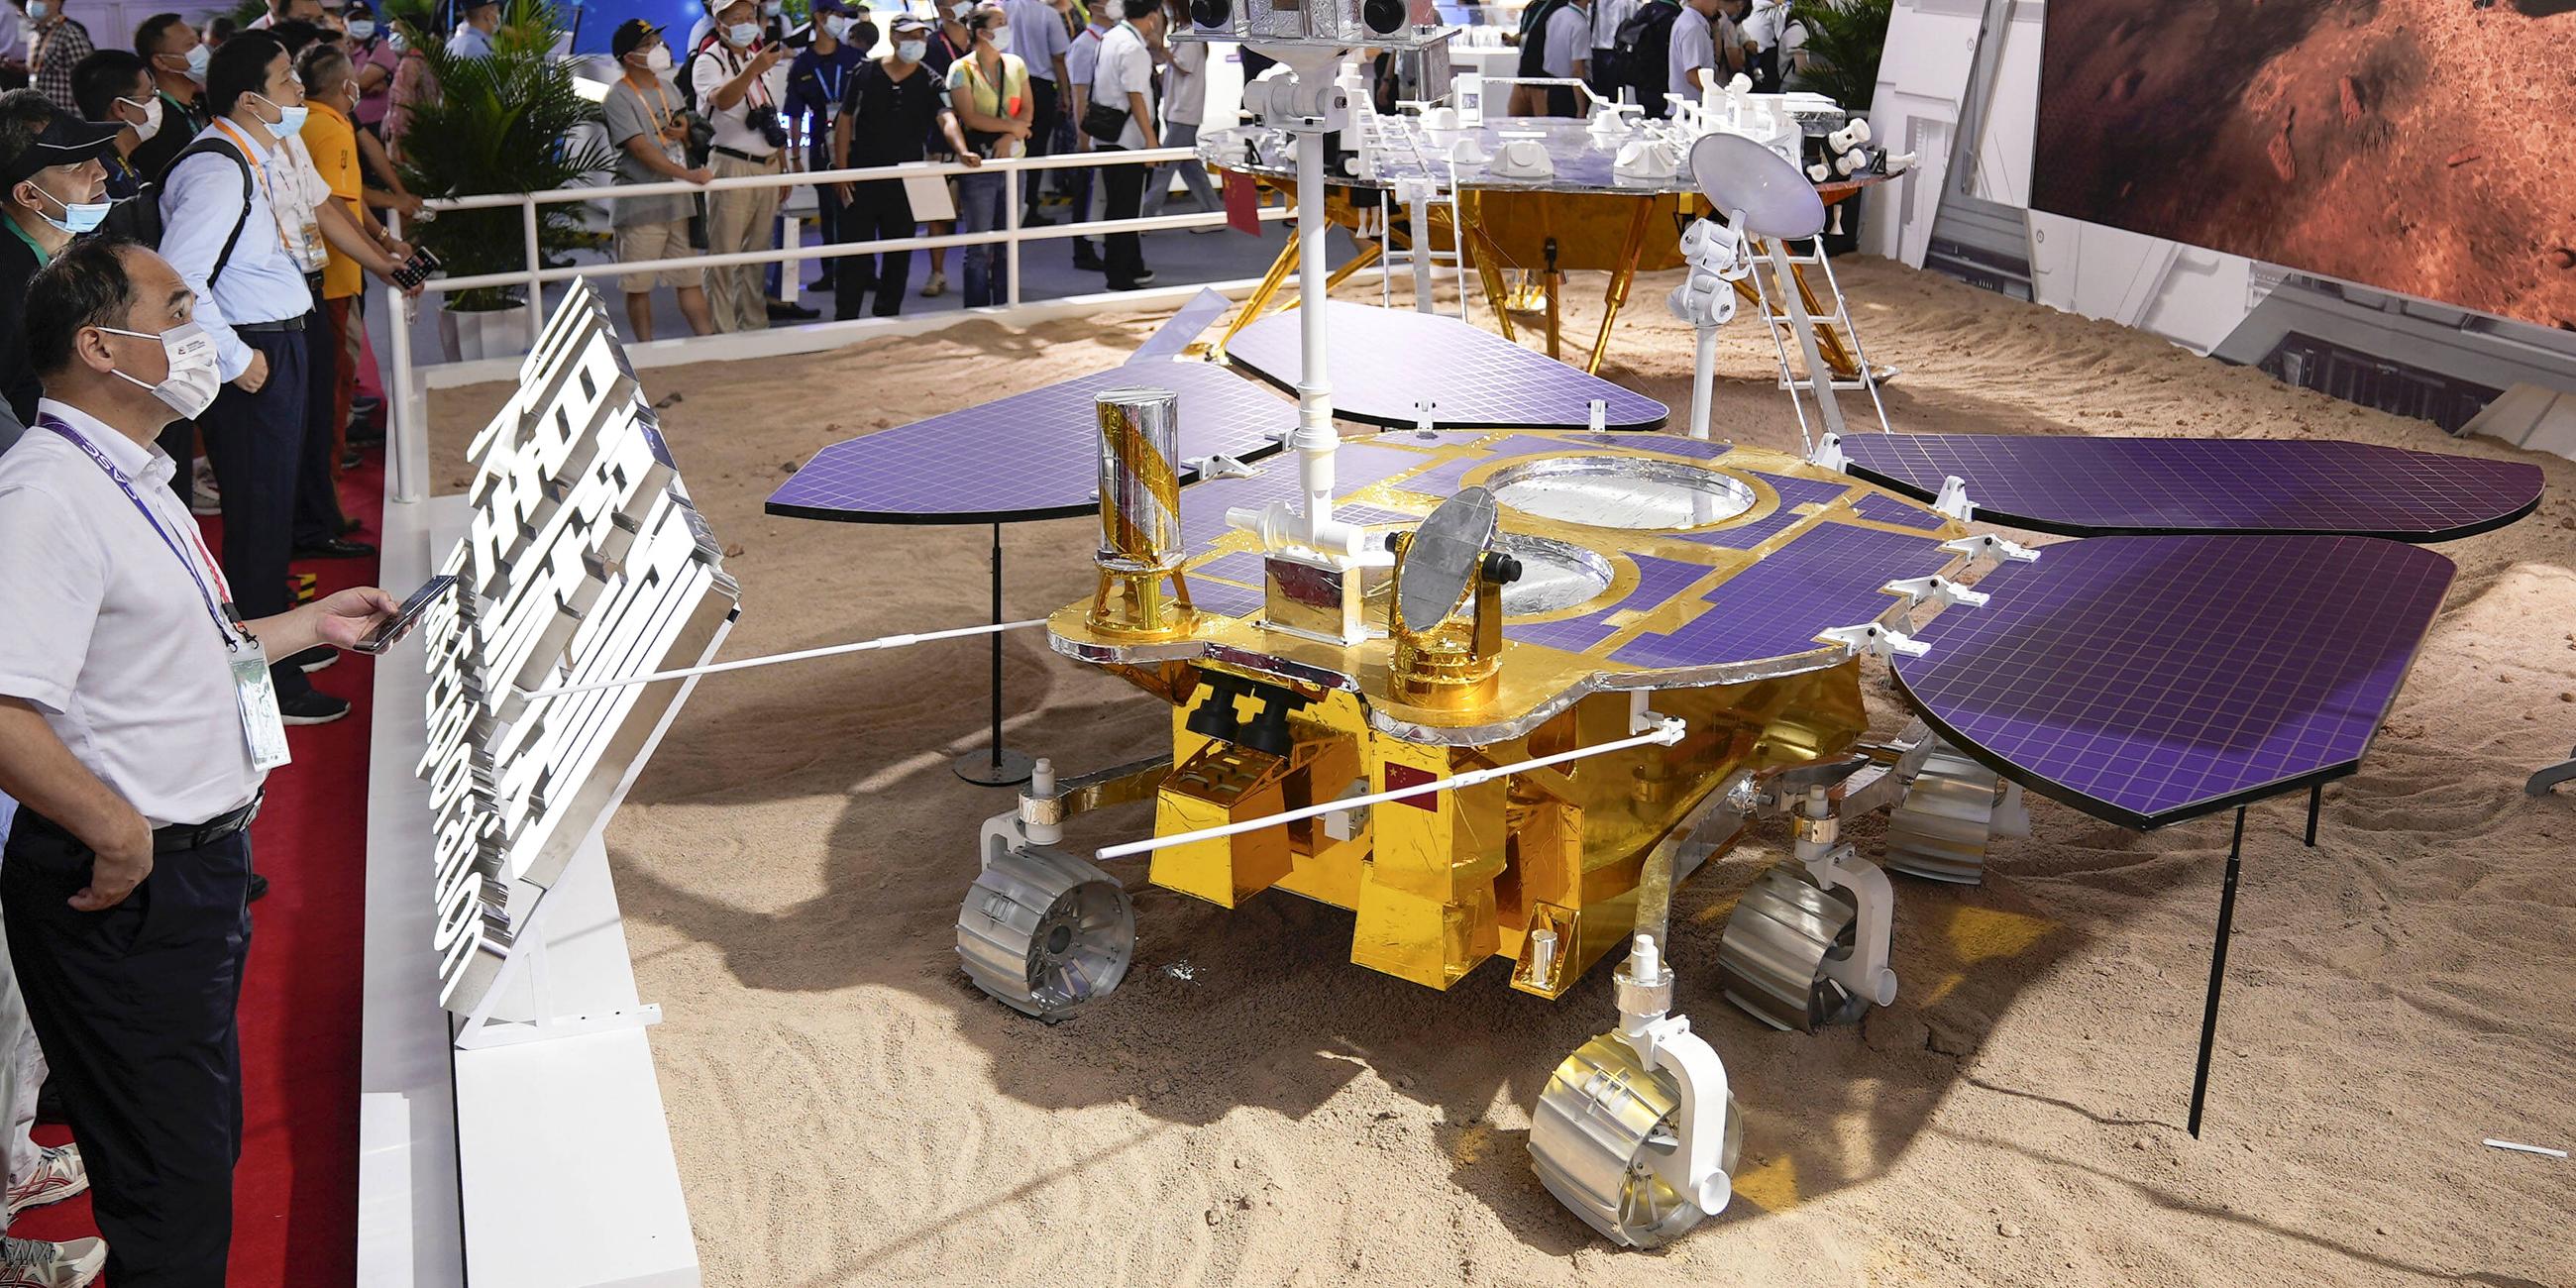 ein Modell des Mars-Rovers Zhurong bei der Airshow China-Austellung, aufgenommen am 28.09.2021